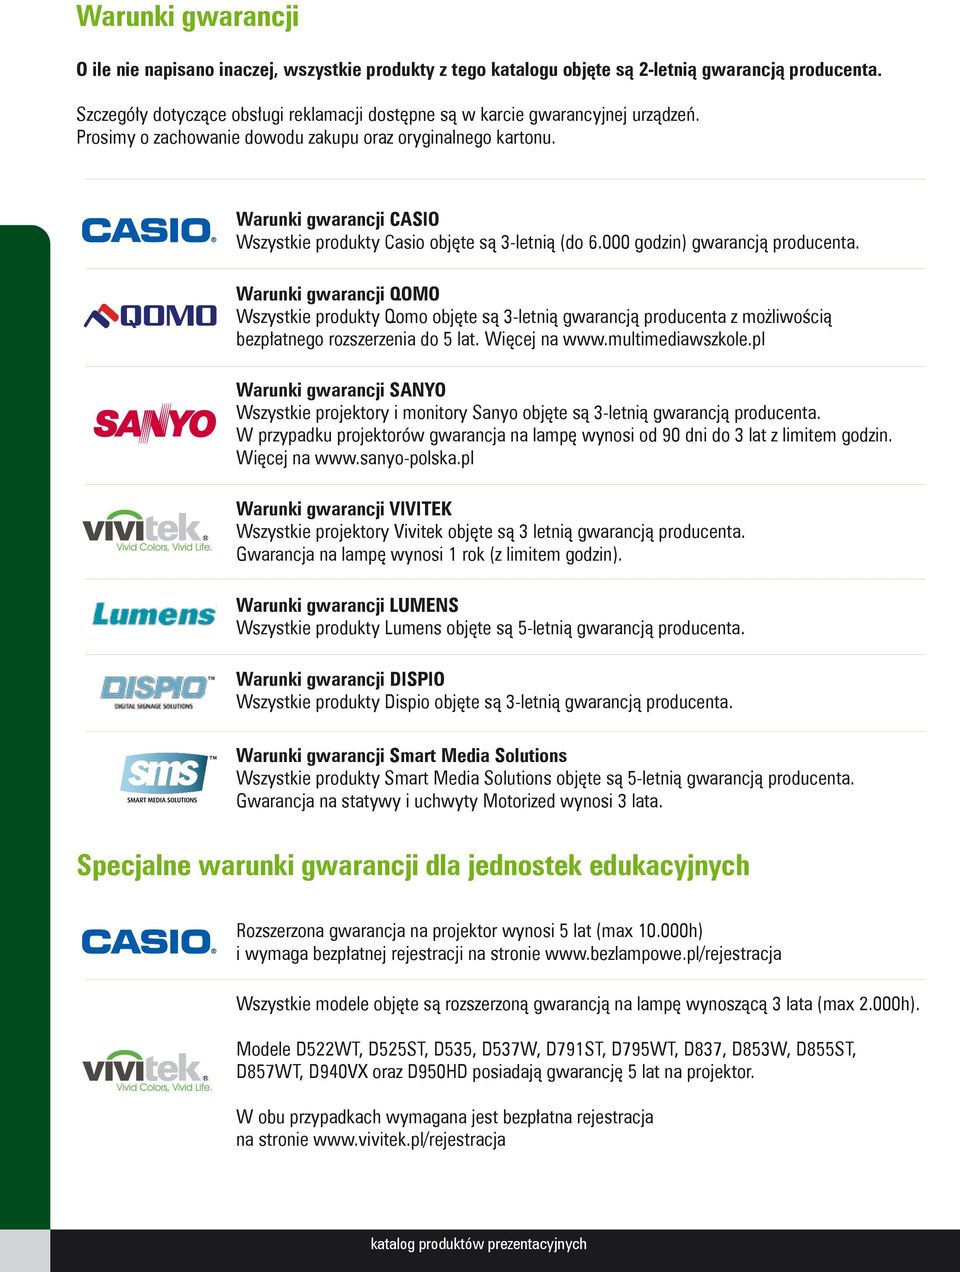 Warunki gwarancji CASIO Wszystkie produkty Casio objęte są 3letnią (do 6.000 godzin) gwarancją producenta.